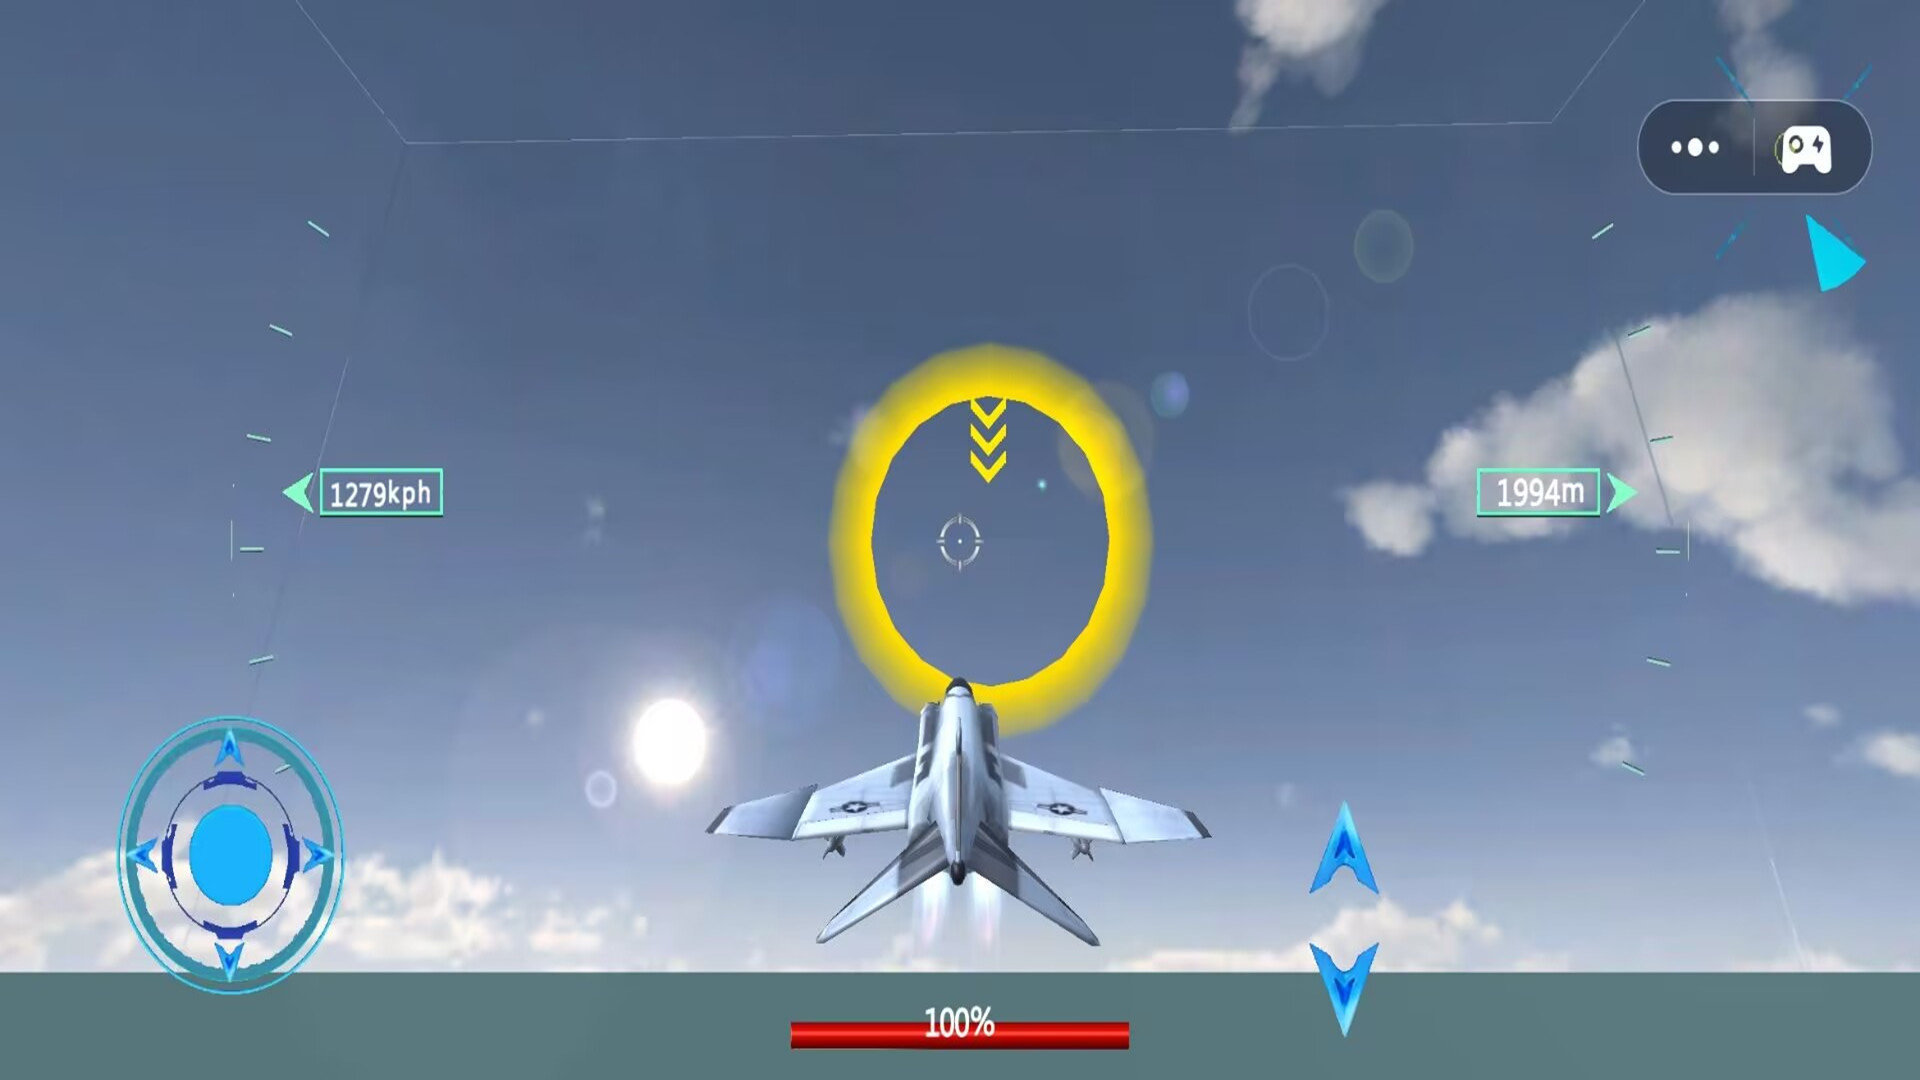 模拟飞行战斗机截图